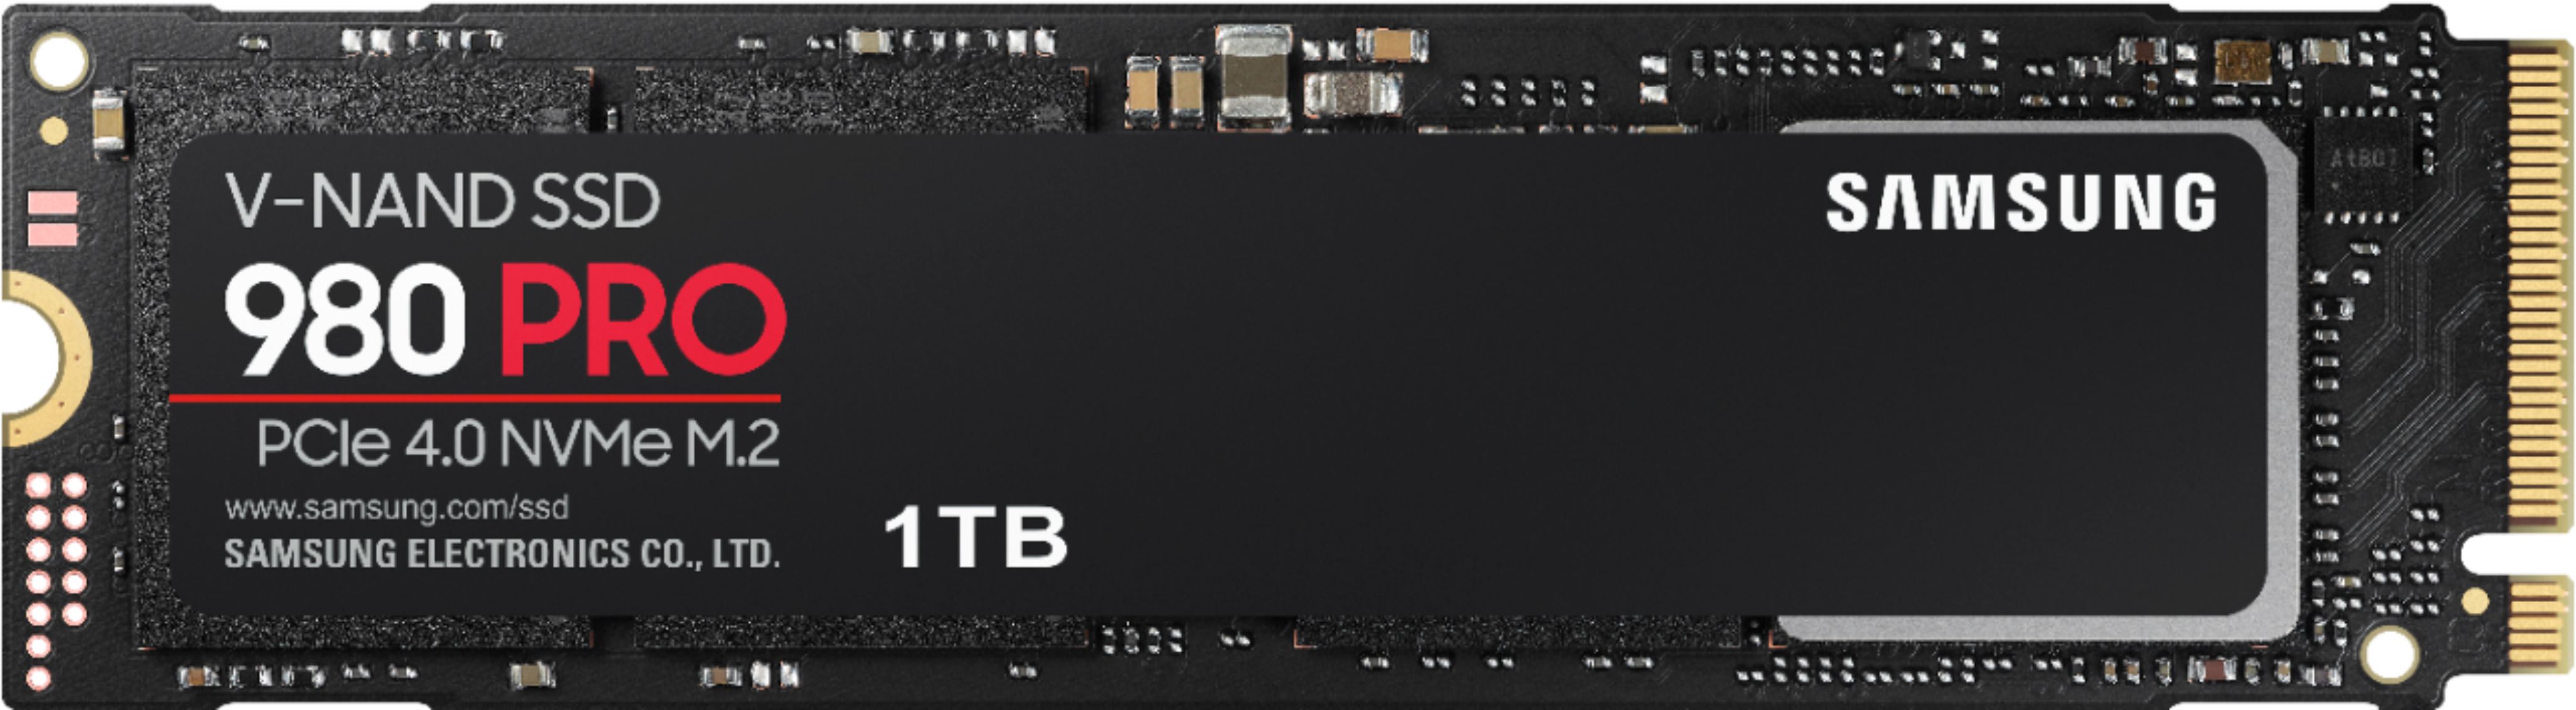 Samsung MZ-V8P1T0B/AM 980 Pro 1 TB - PCIe 4.0 - NVMe - M.2 SSD